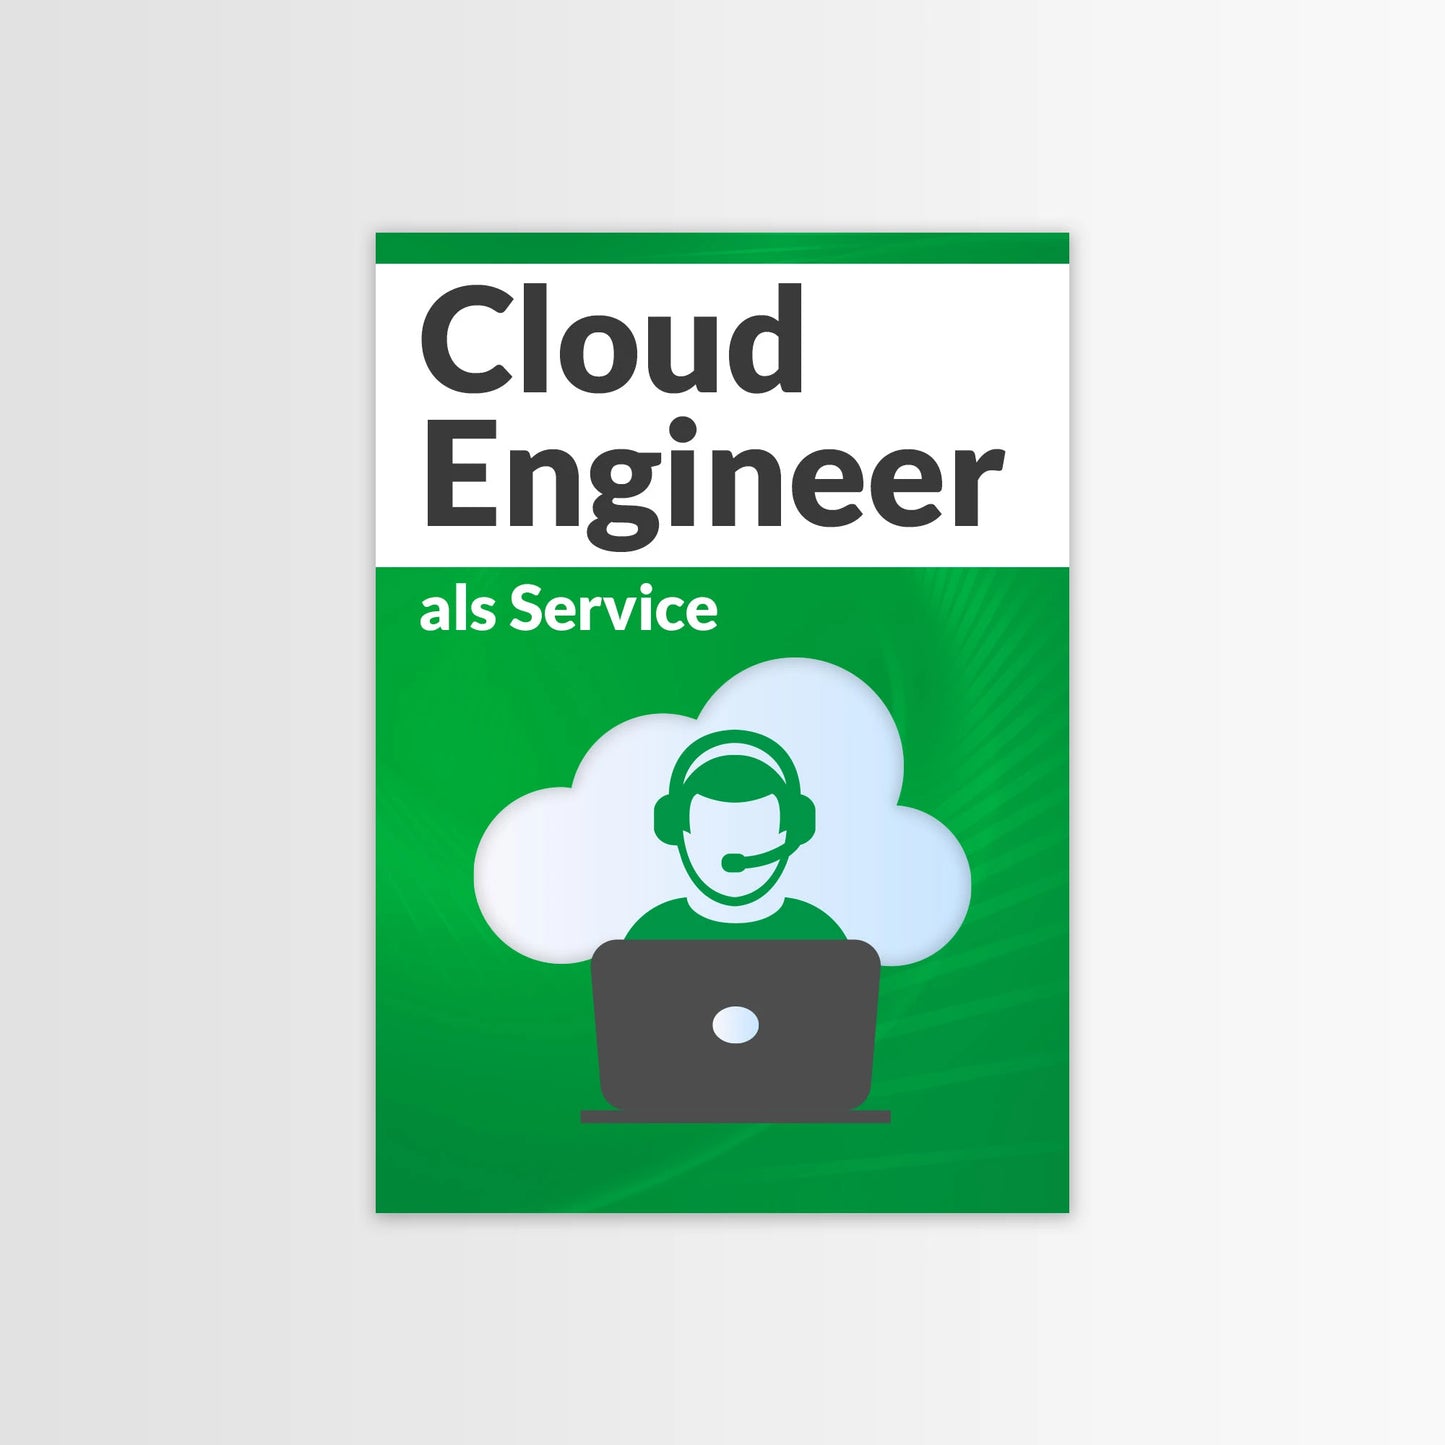 Cloud Engineer als Dienst